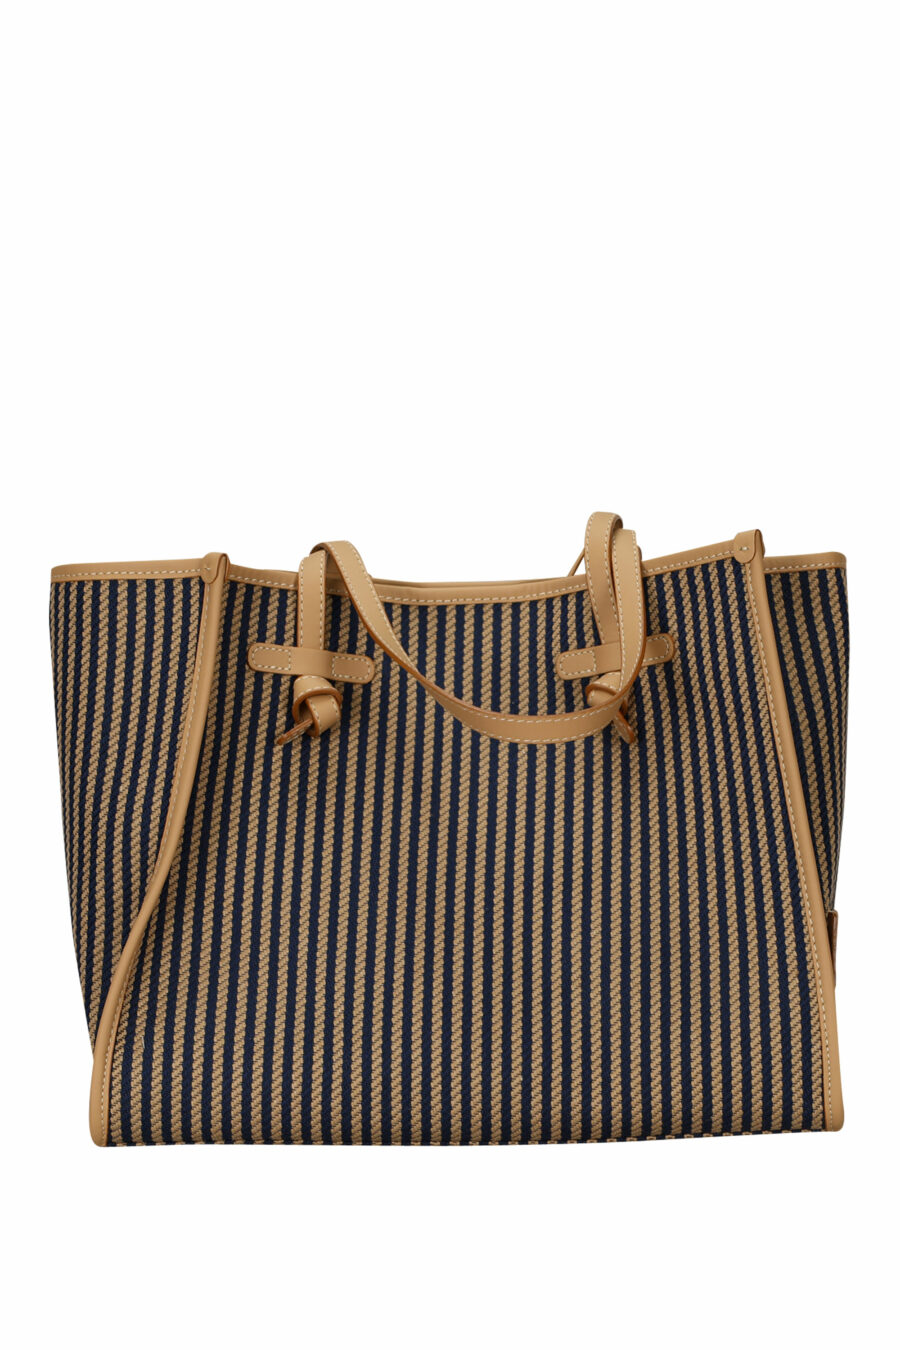 Shopper Tasche "Marcella" braun mit dunkelblauen Linien und Minilogo - 8057145894331